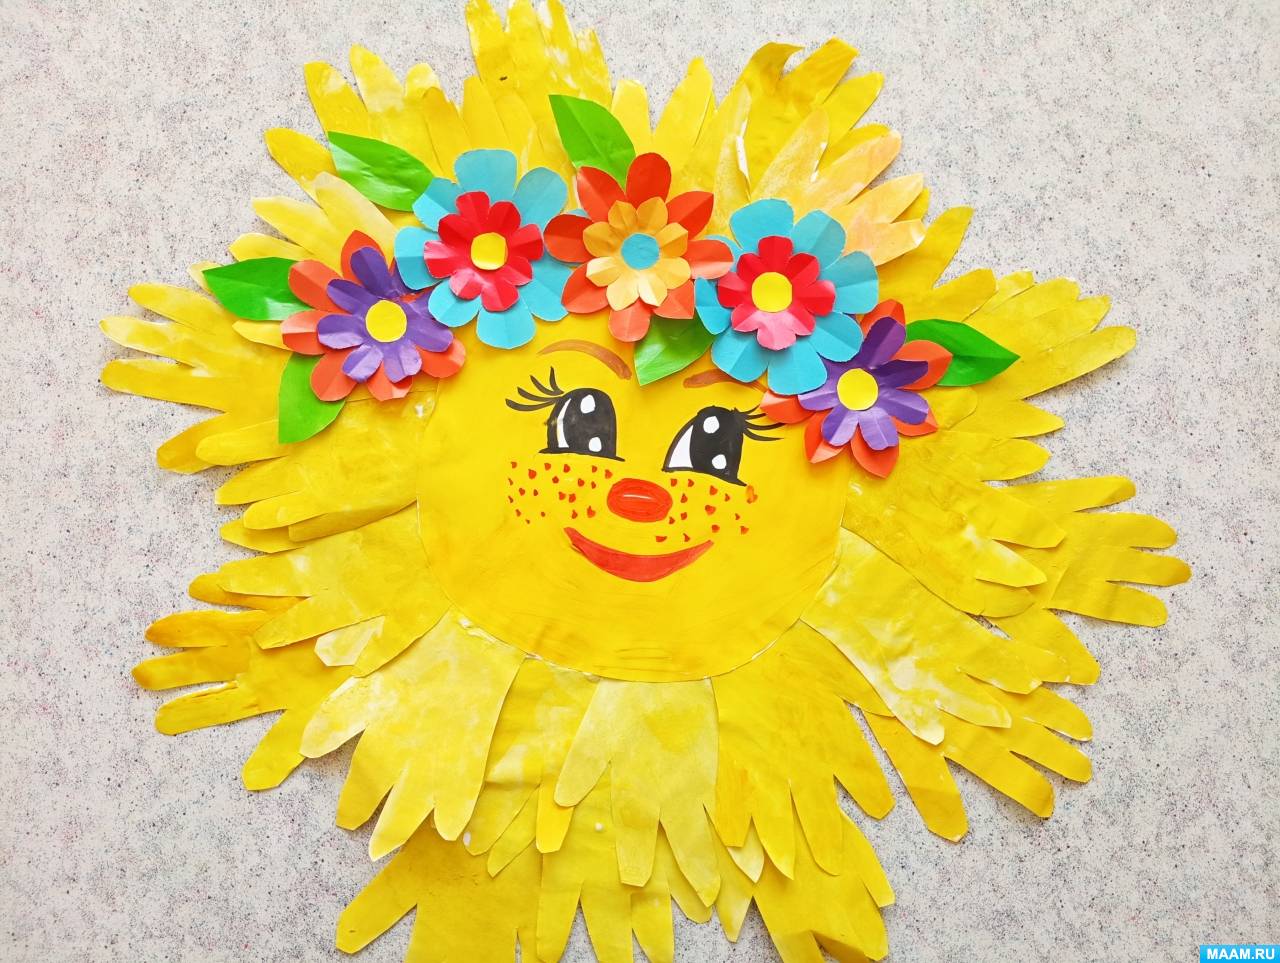 Поделка солнышко своими руками - 83 фото идеи самодельных изделий для детей детского сада и школы